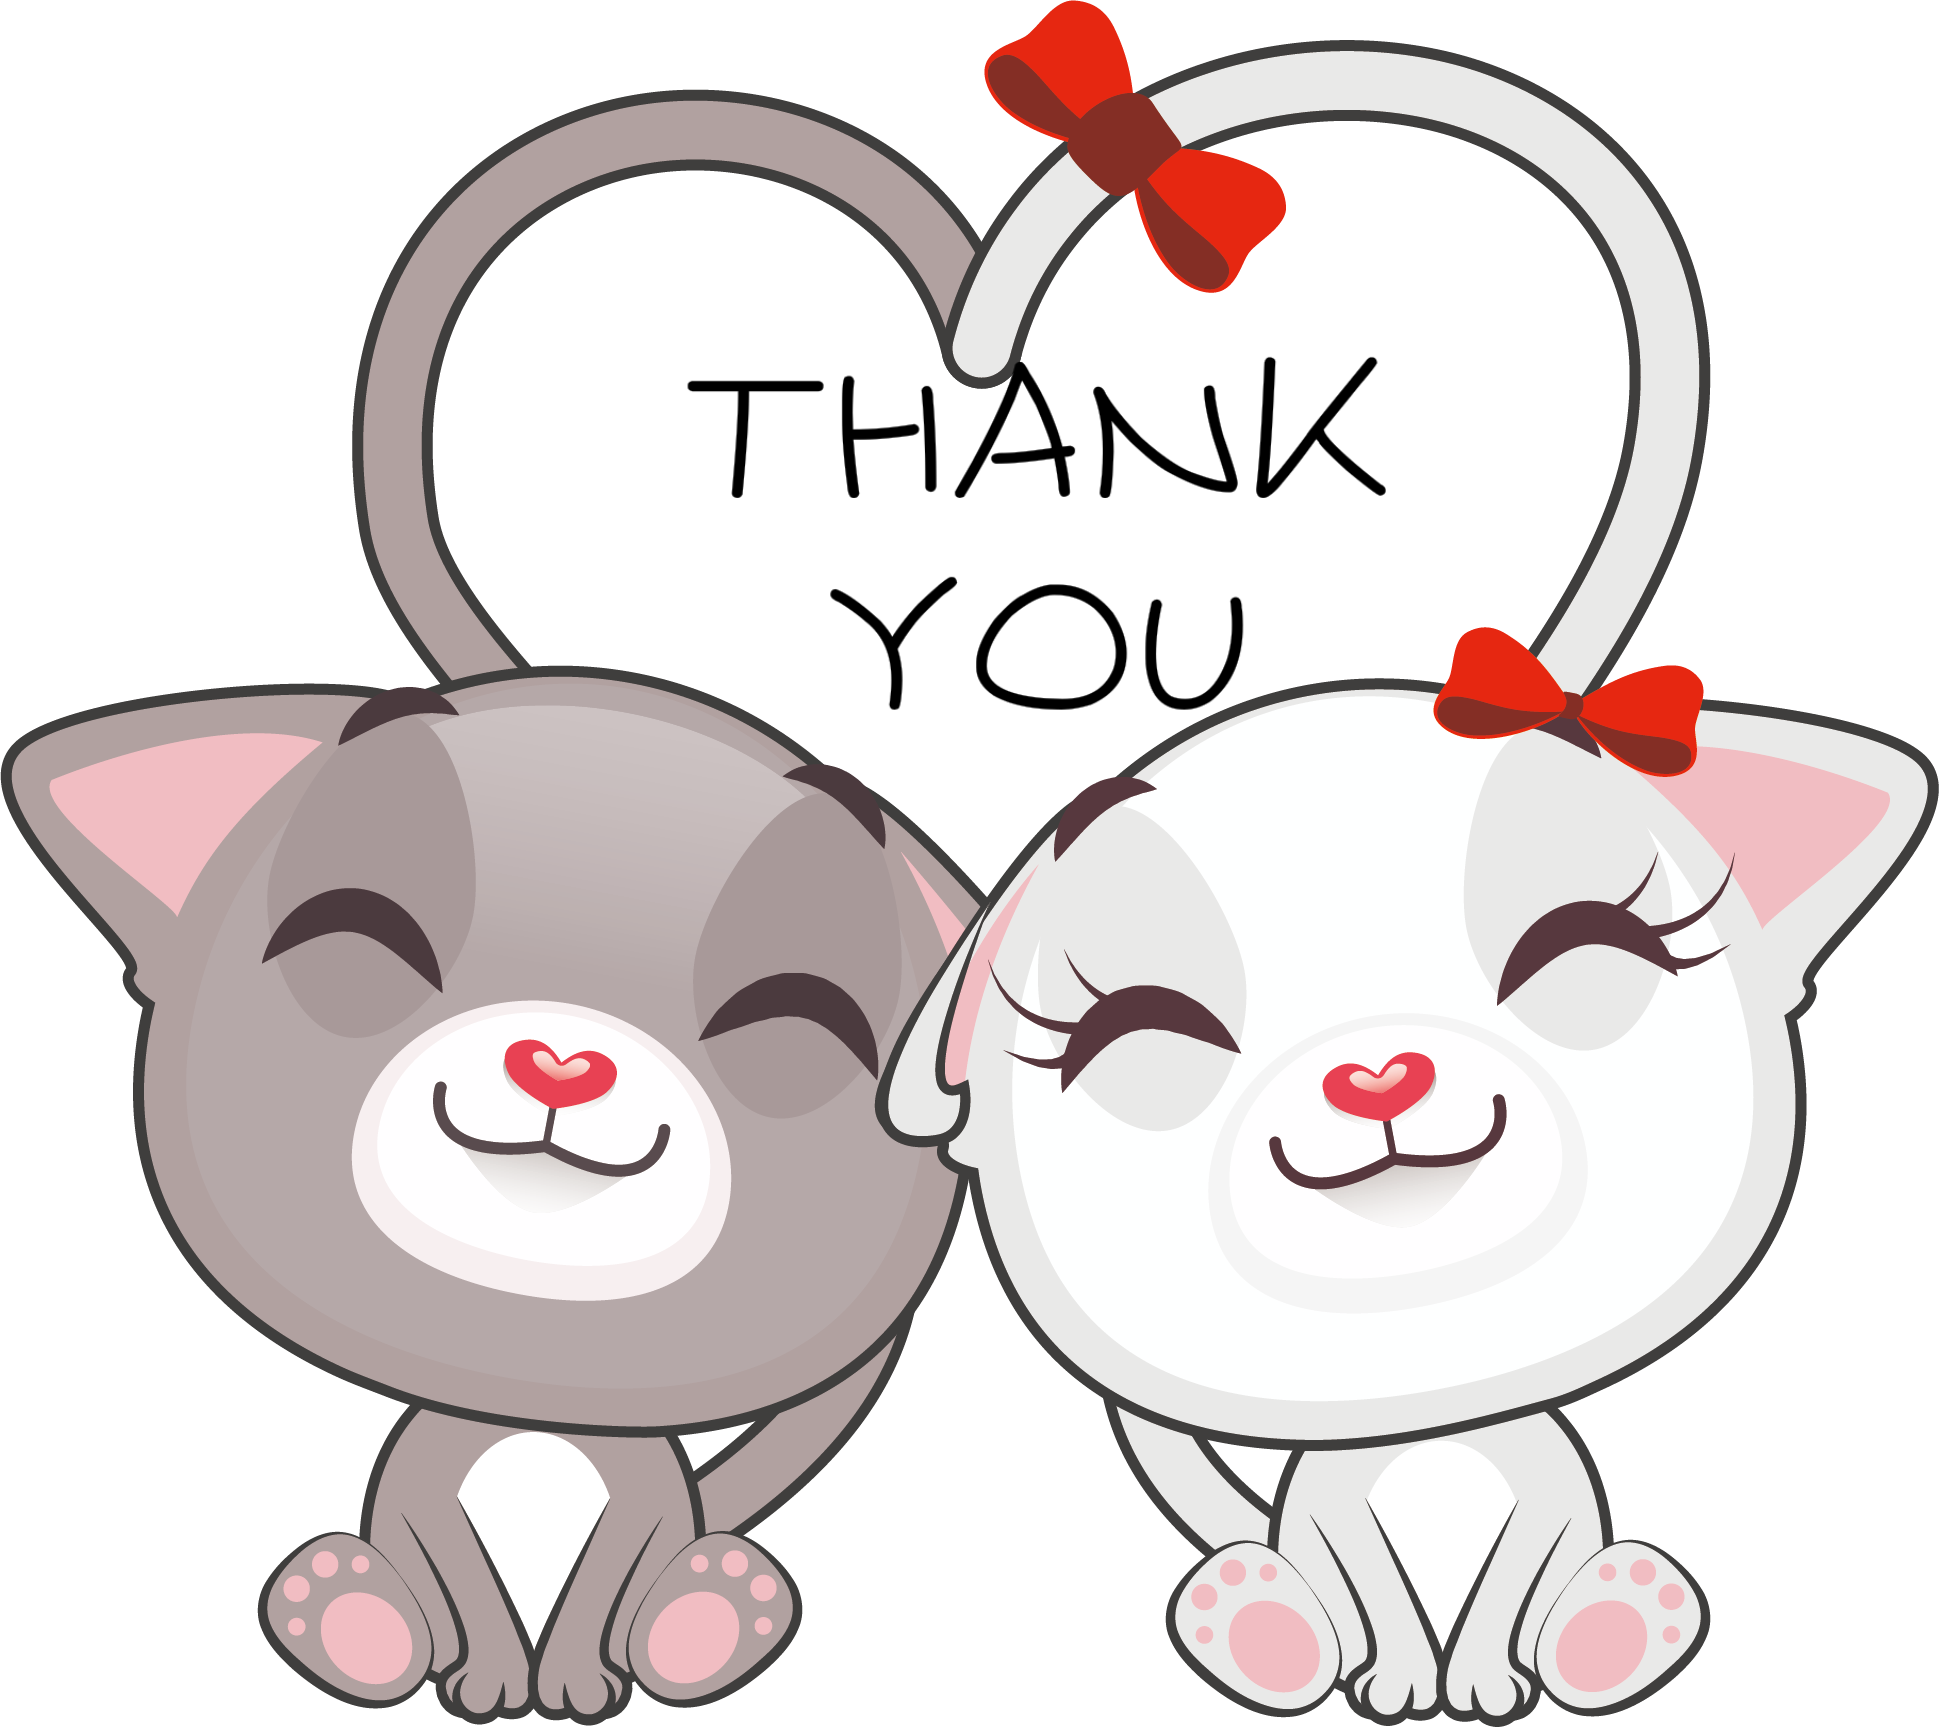 Влюбленные мультяшки мышки - Анимация гиф картинка смайлик скачать